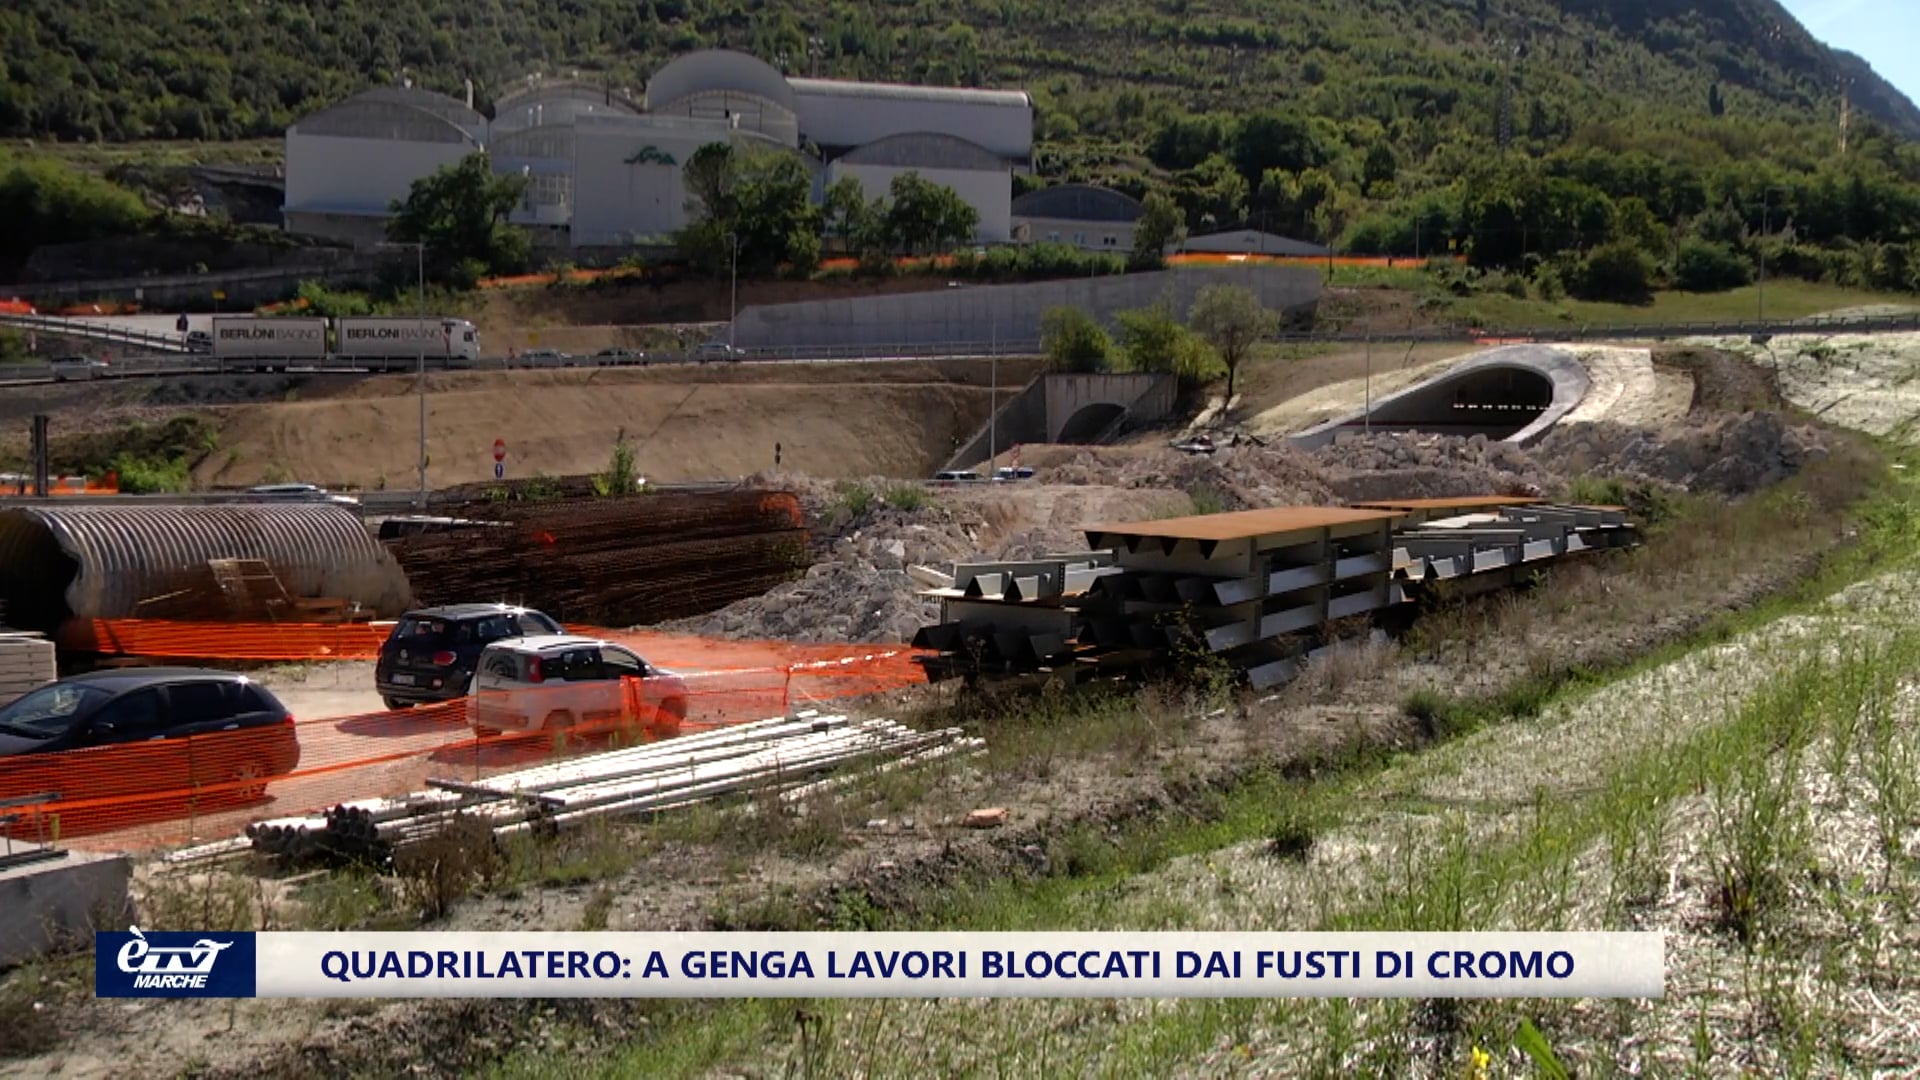   Quadrilatero: altri fusti di cromo ritrovati a Genga, lavori bloccati. 